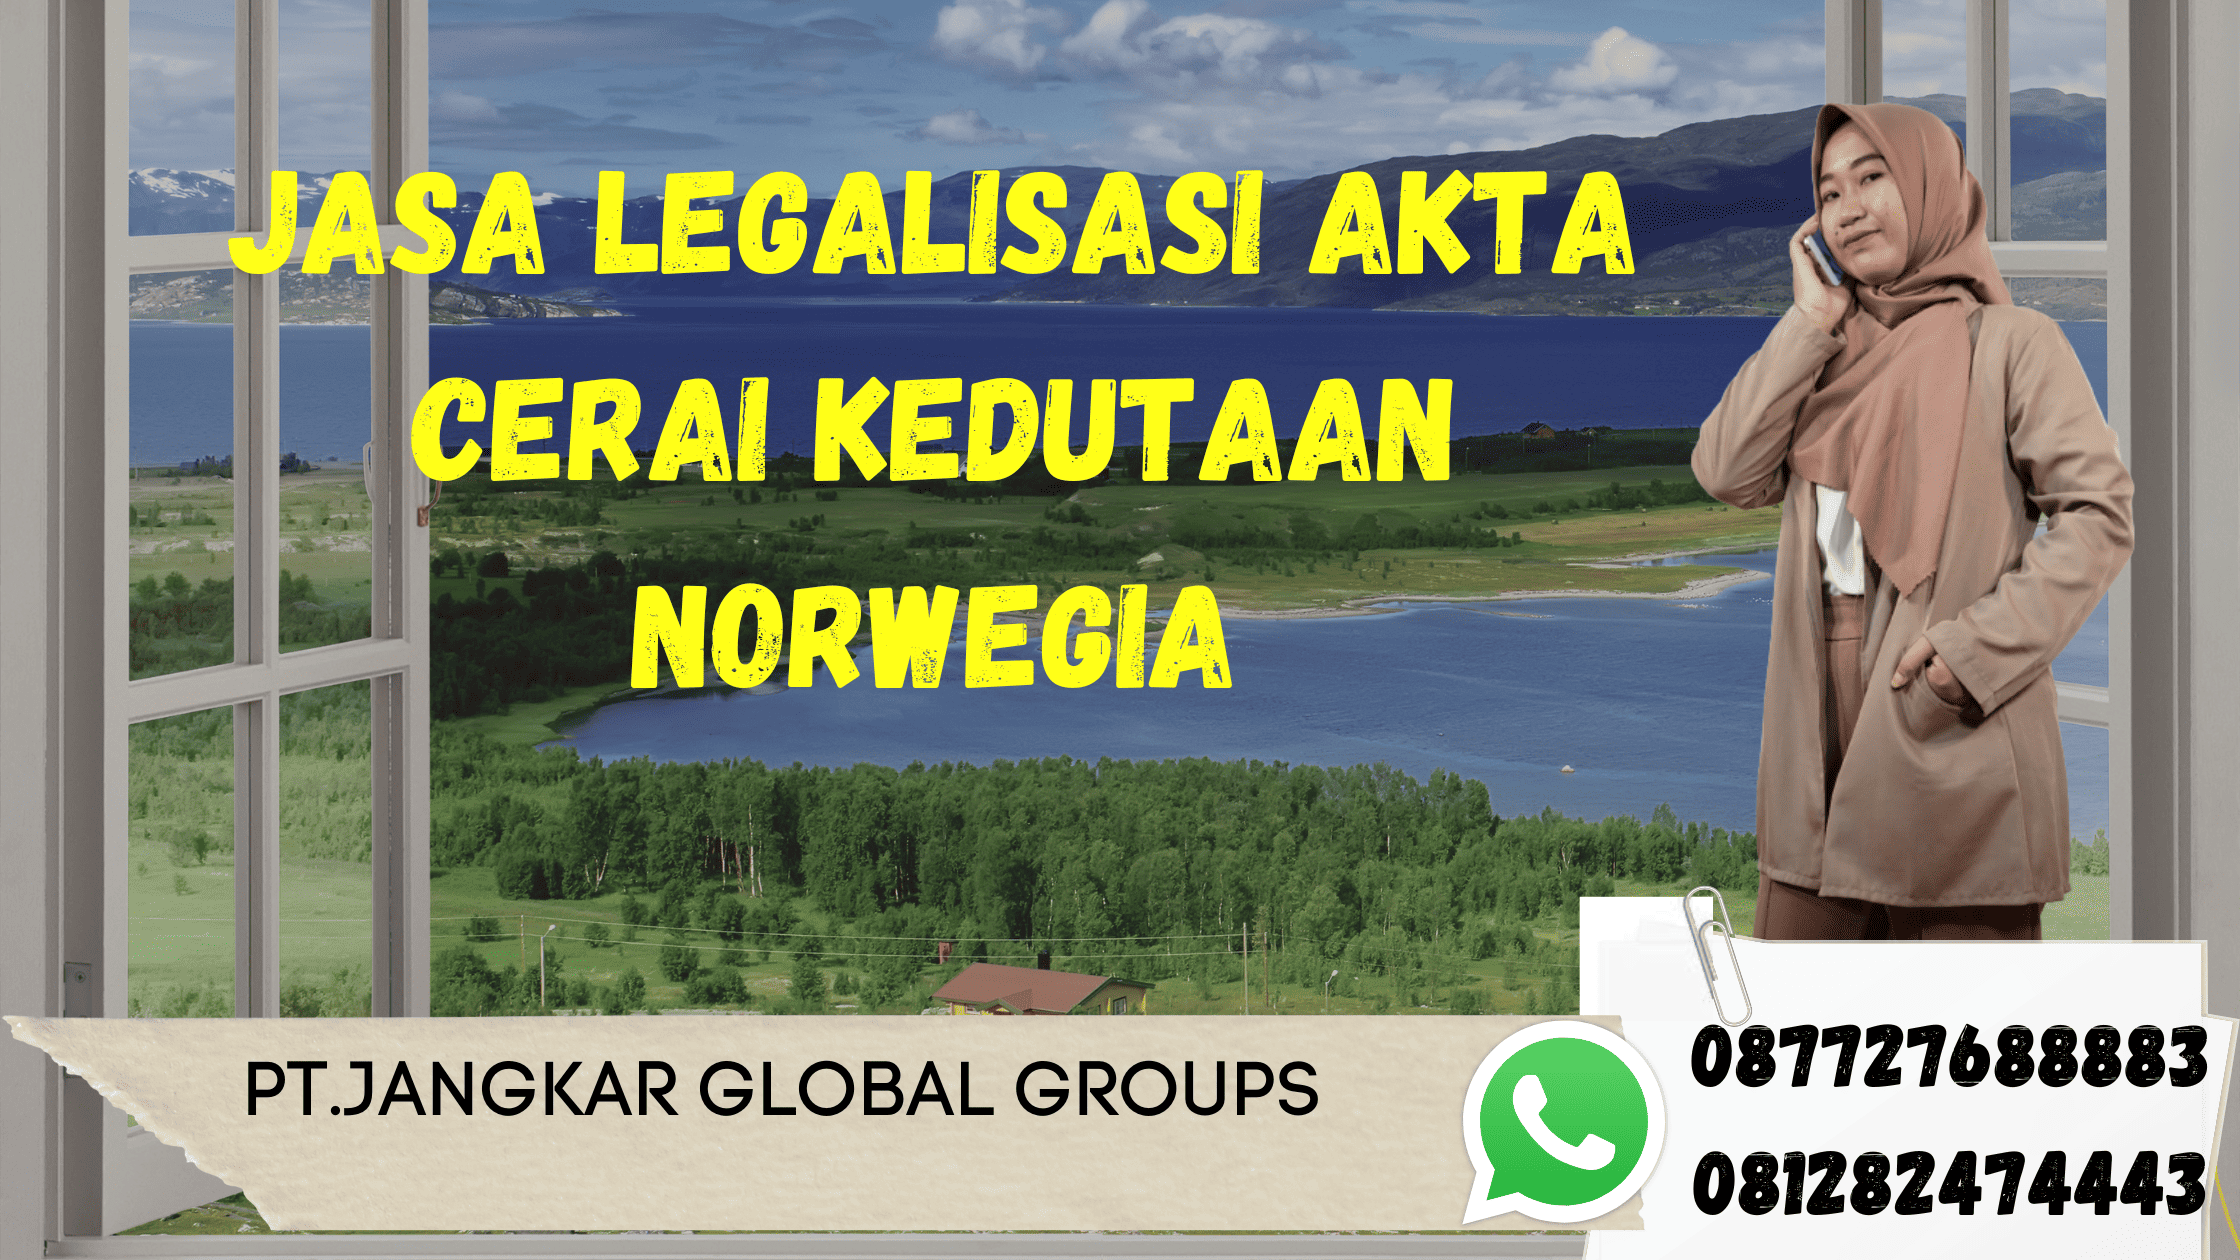 Jasa Legalisasi Akta Cerai Kedutaan Norwegia